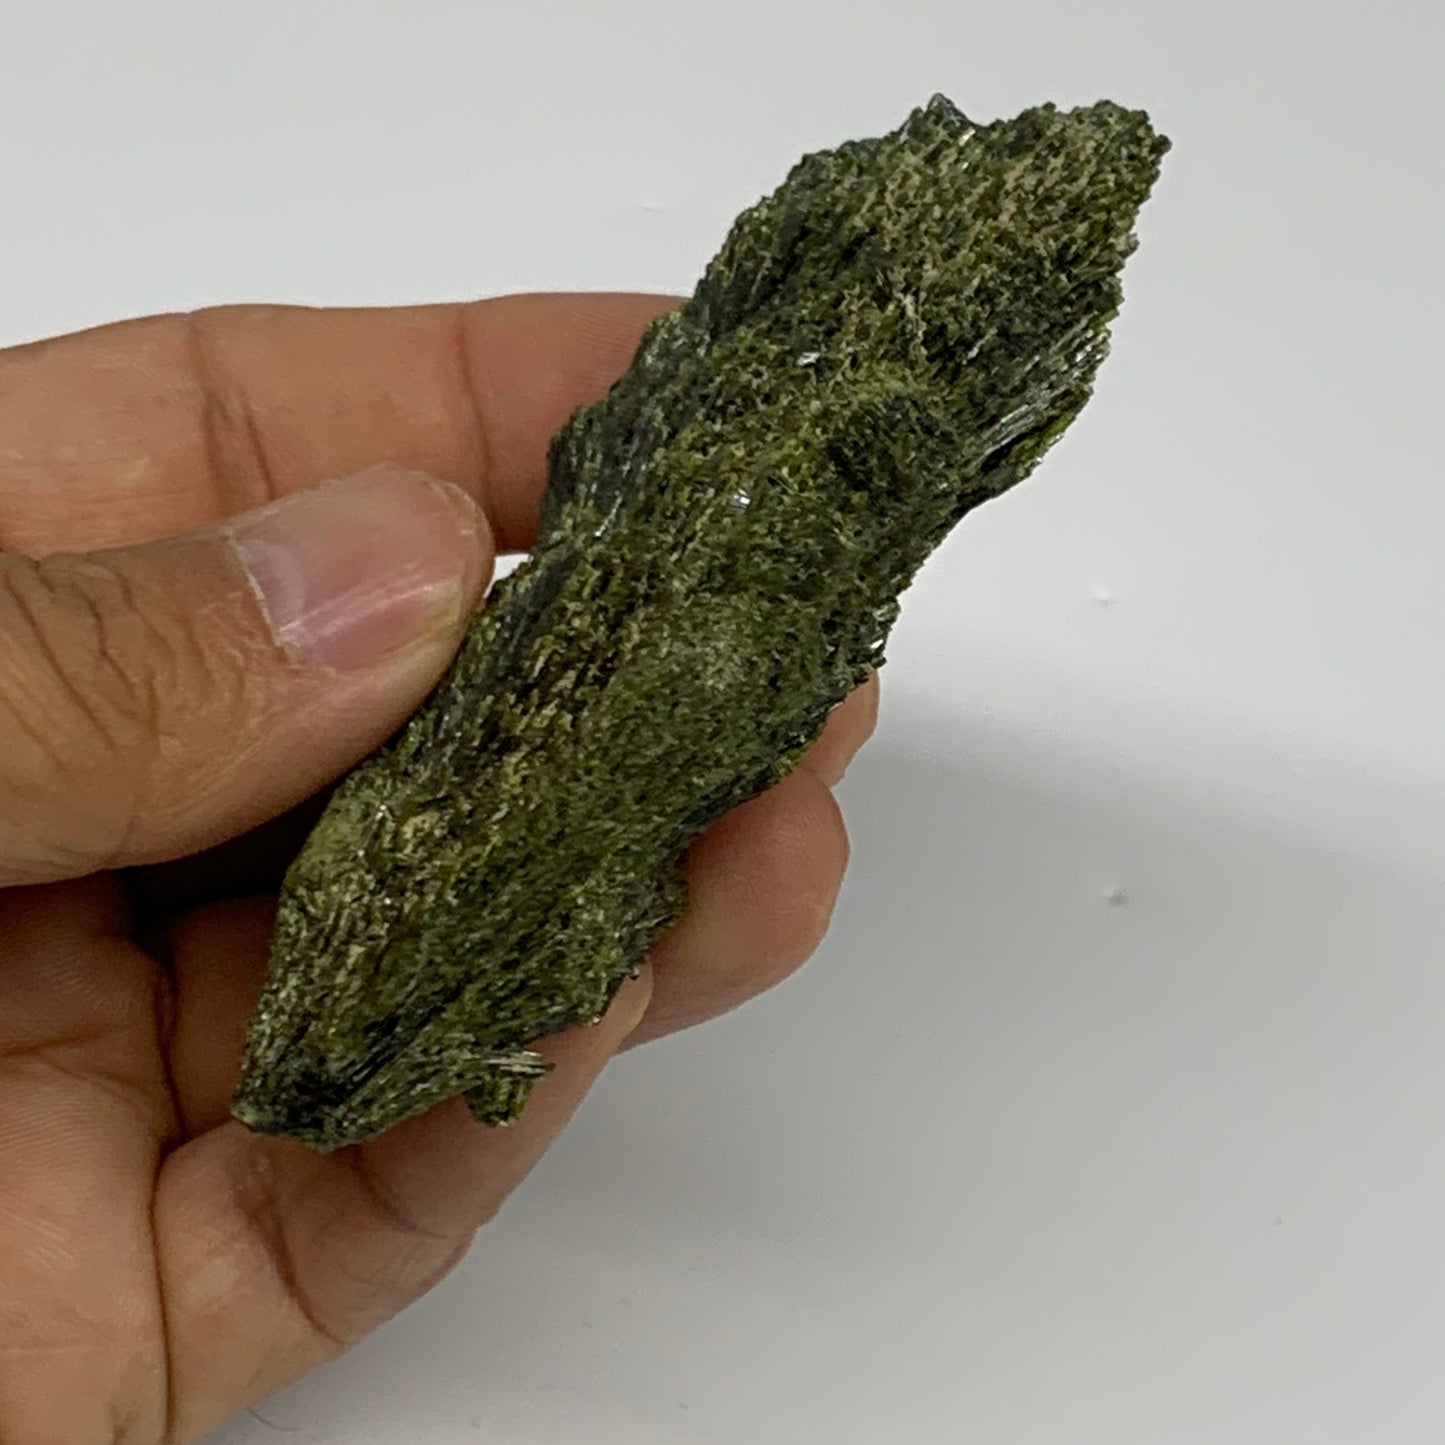 96.2g,3"x1.8"x0.7",Green Epidote Custer/Leaf Mineral Specimen @Pakistan, B27642